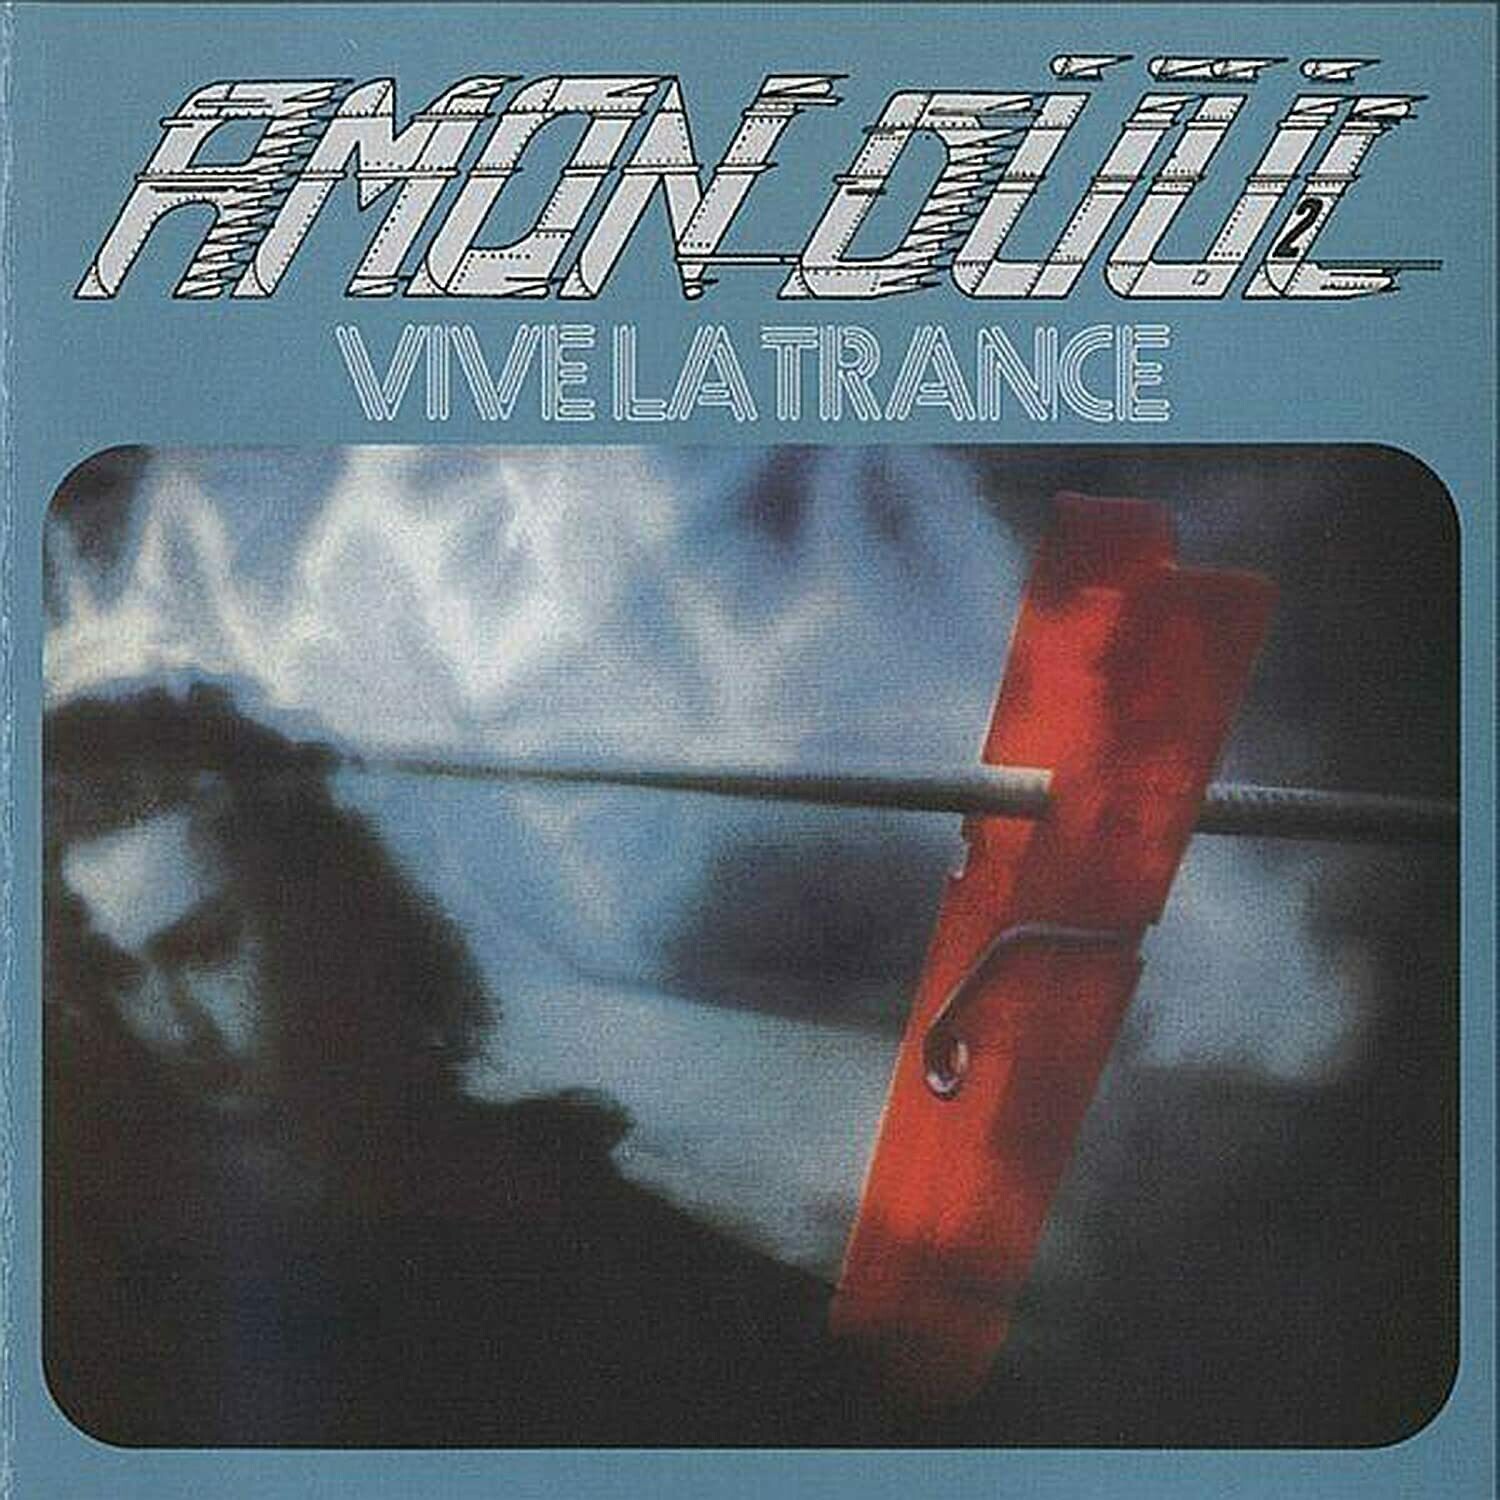 Amon Düül II "Vive La Trance" EX+ 1974